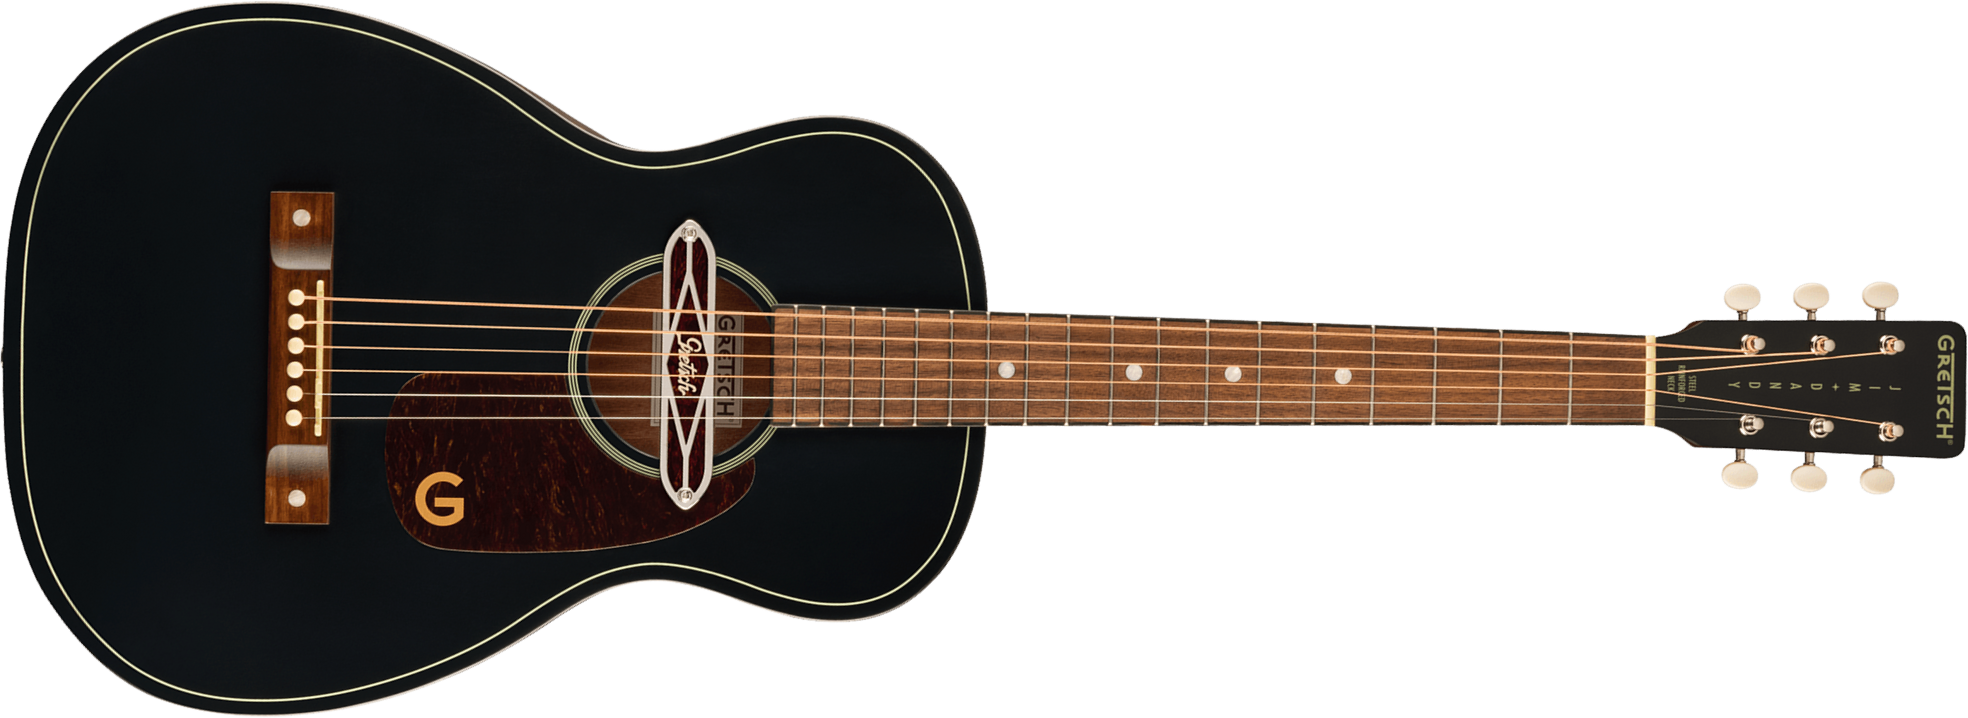 Gretsch Jim Dandy Deltolux Parlor Tout Sapele Noy - Black Top Semi Gloss - Electro acoustic guitar - Main picture